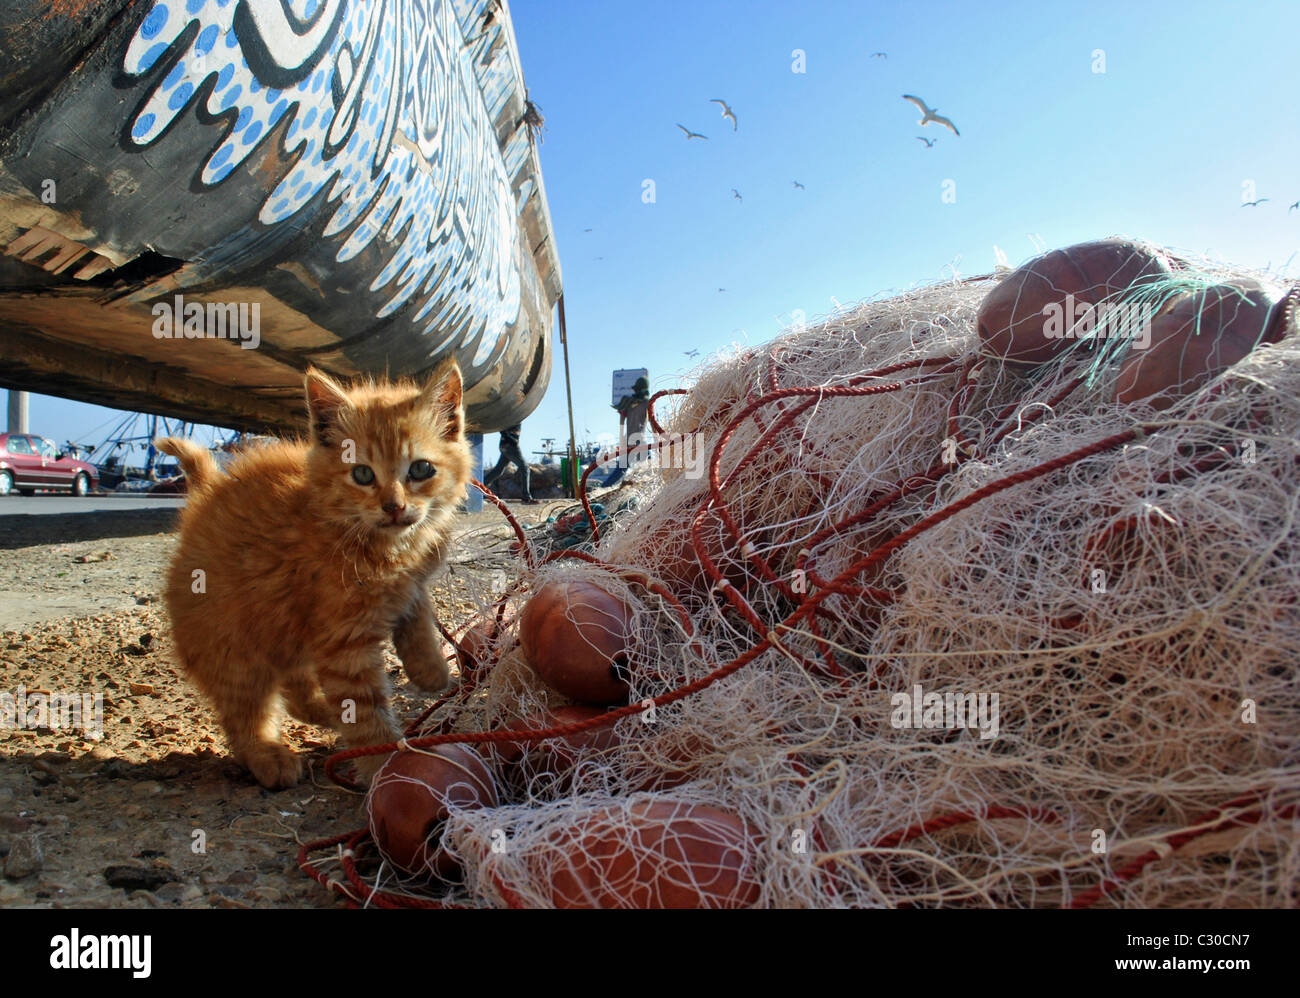 Gattino e reti da pesca, Essaouira, Marocco Foto Stock